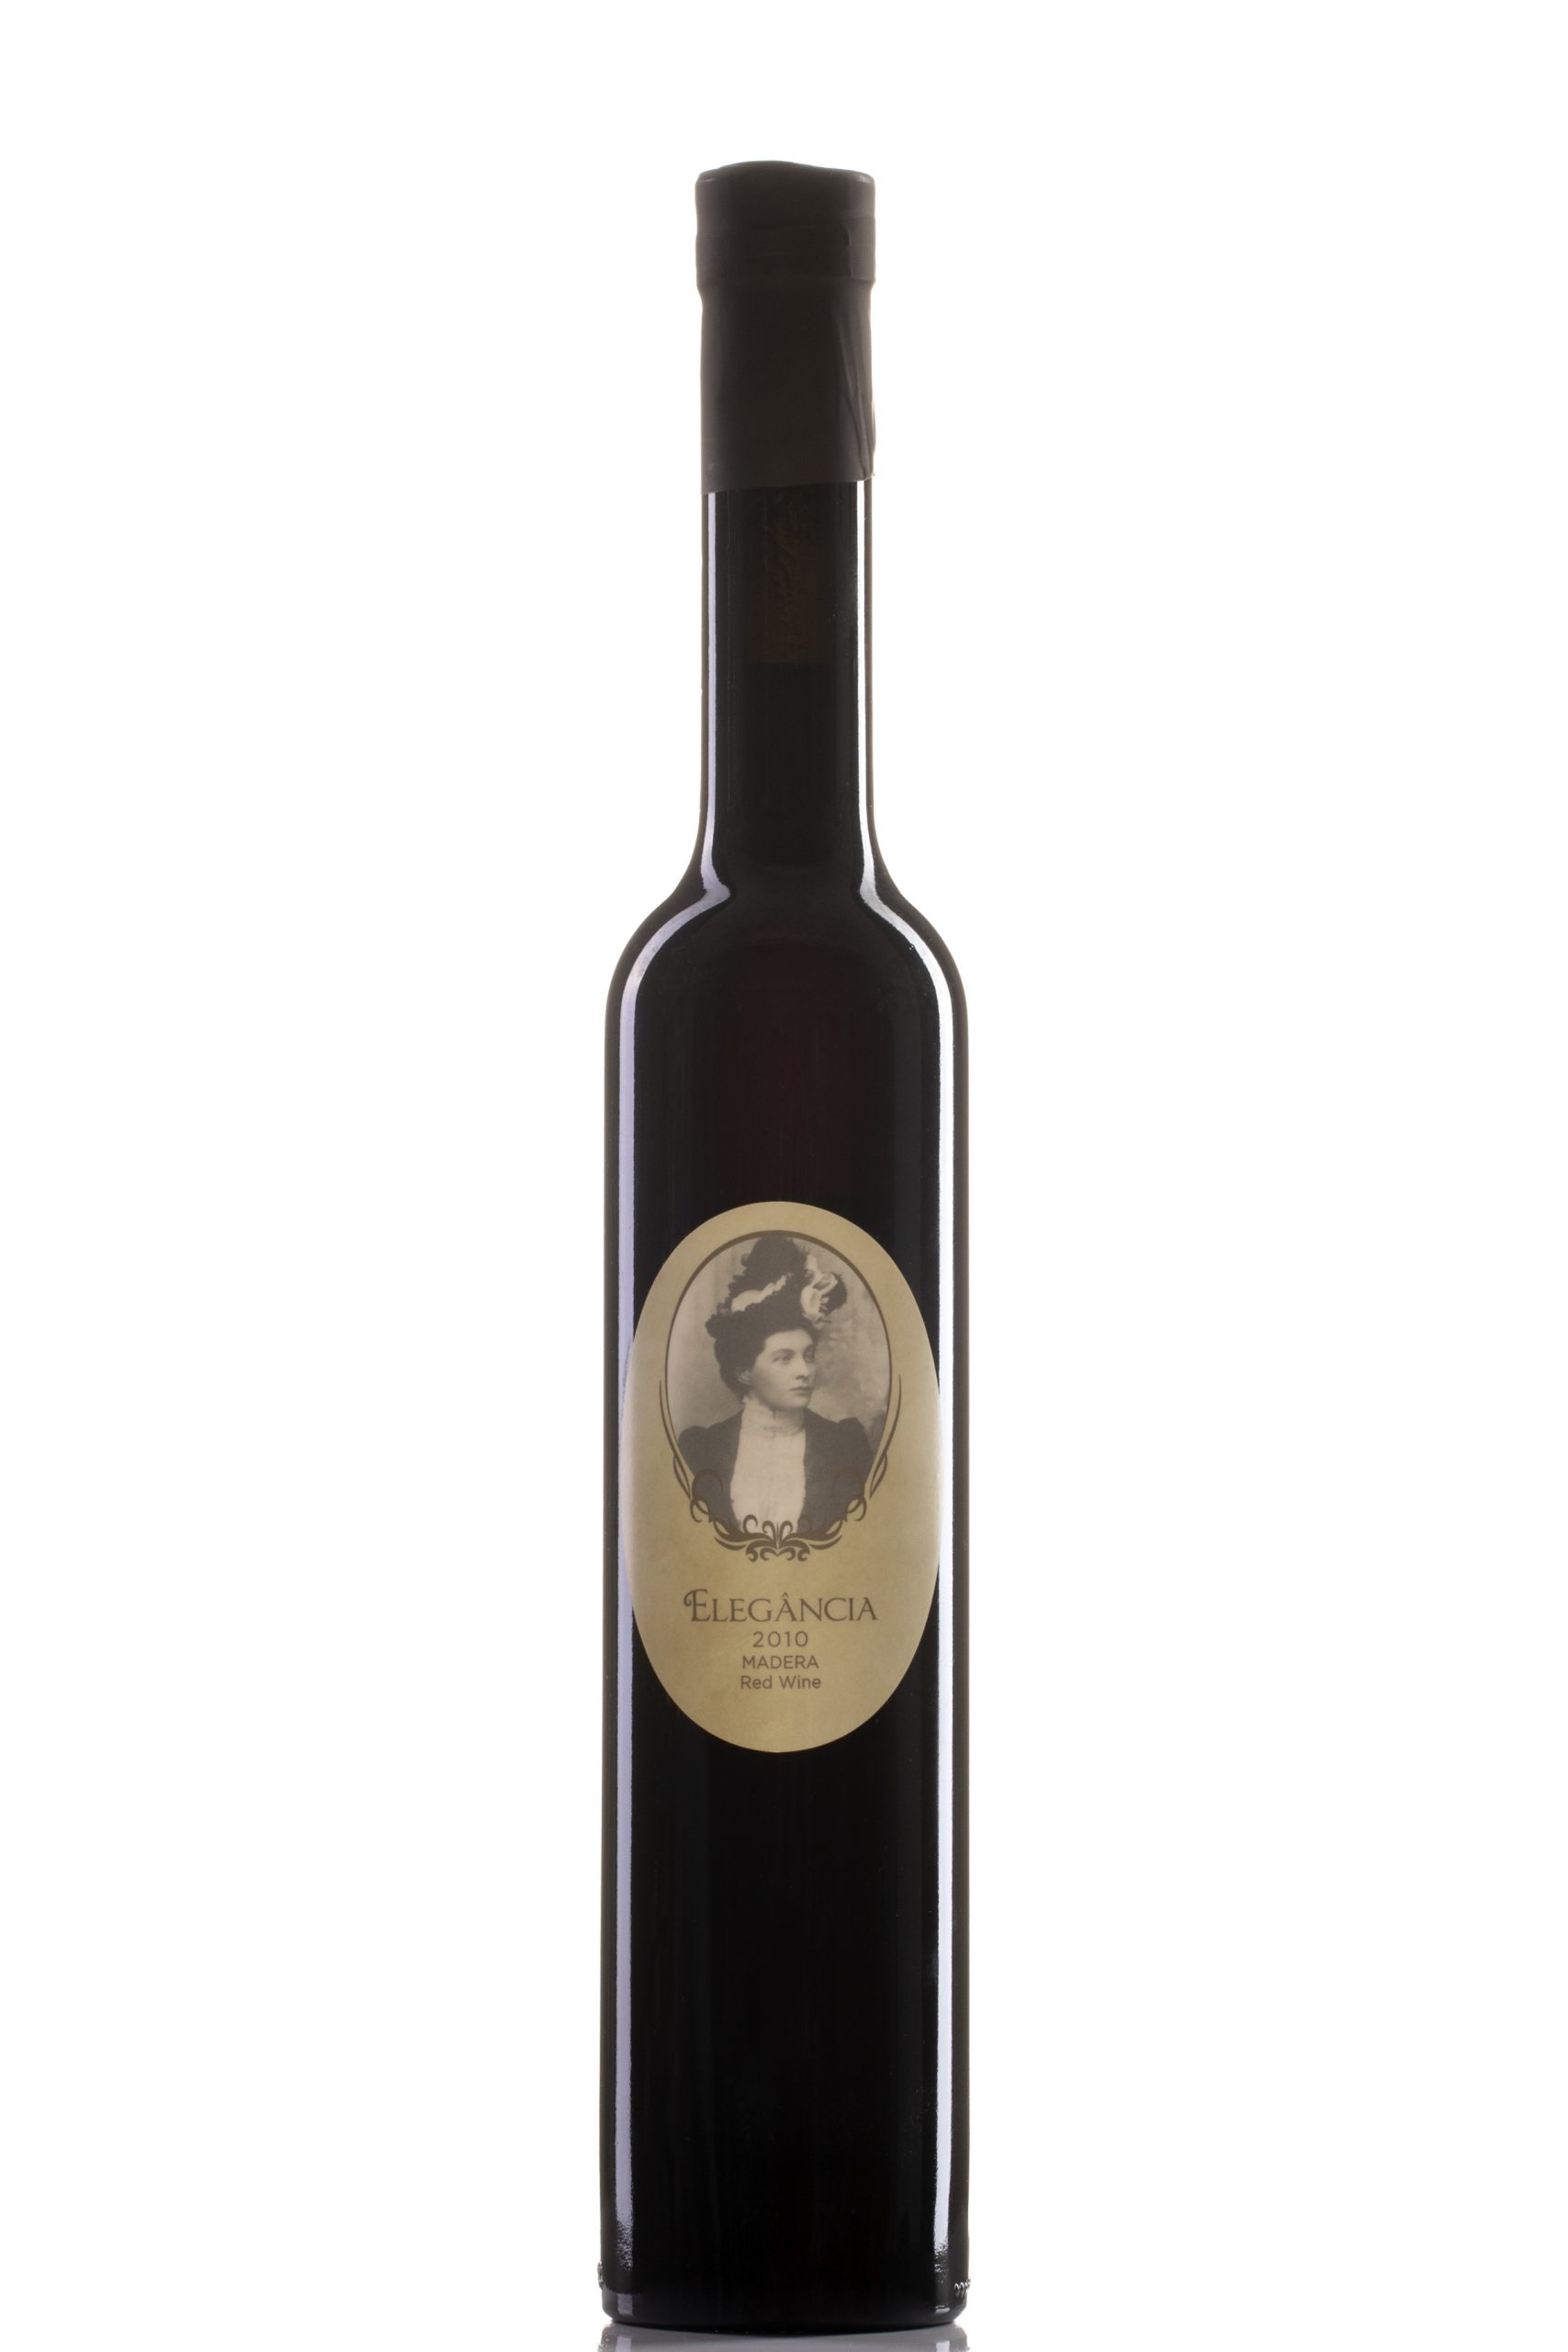 melodrama Udstyr Kan ikke Elegancia Vintage Port (2010) Madera County 500 ml – Barterra Winery